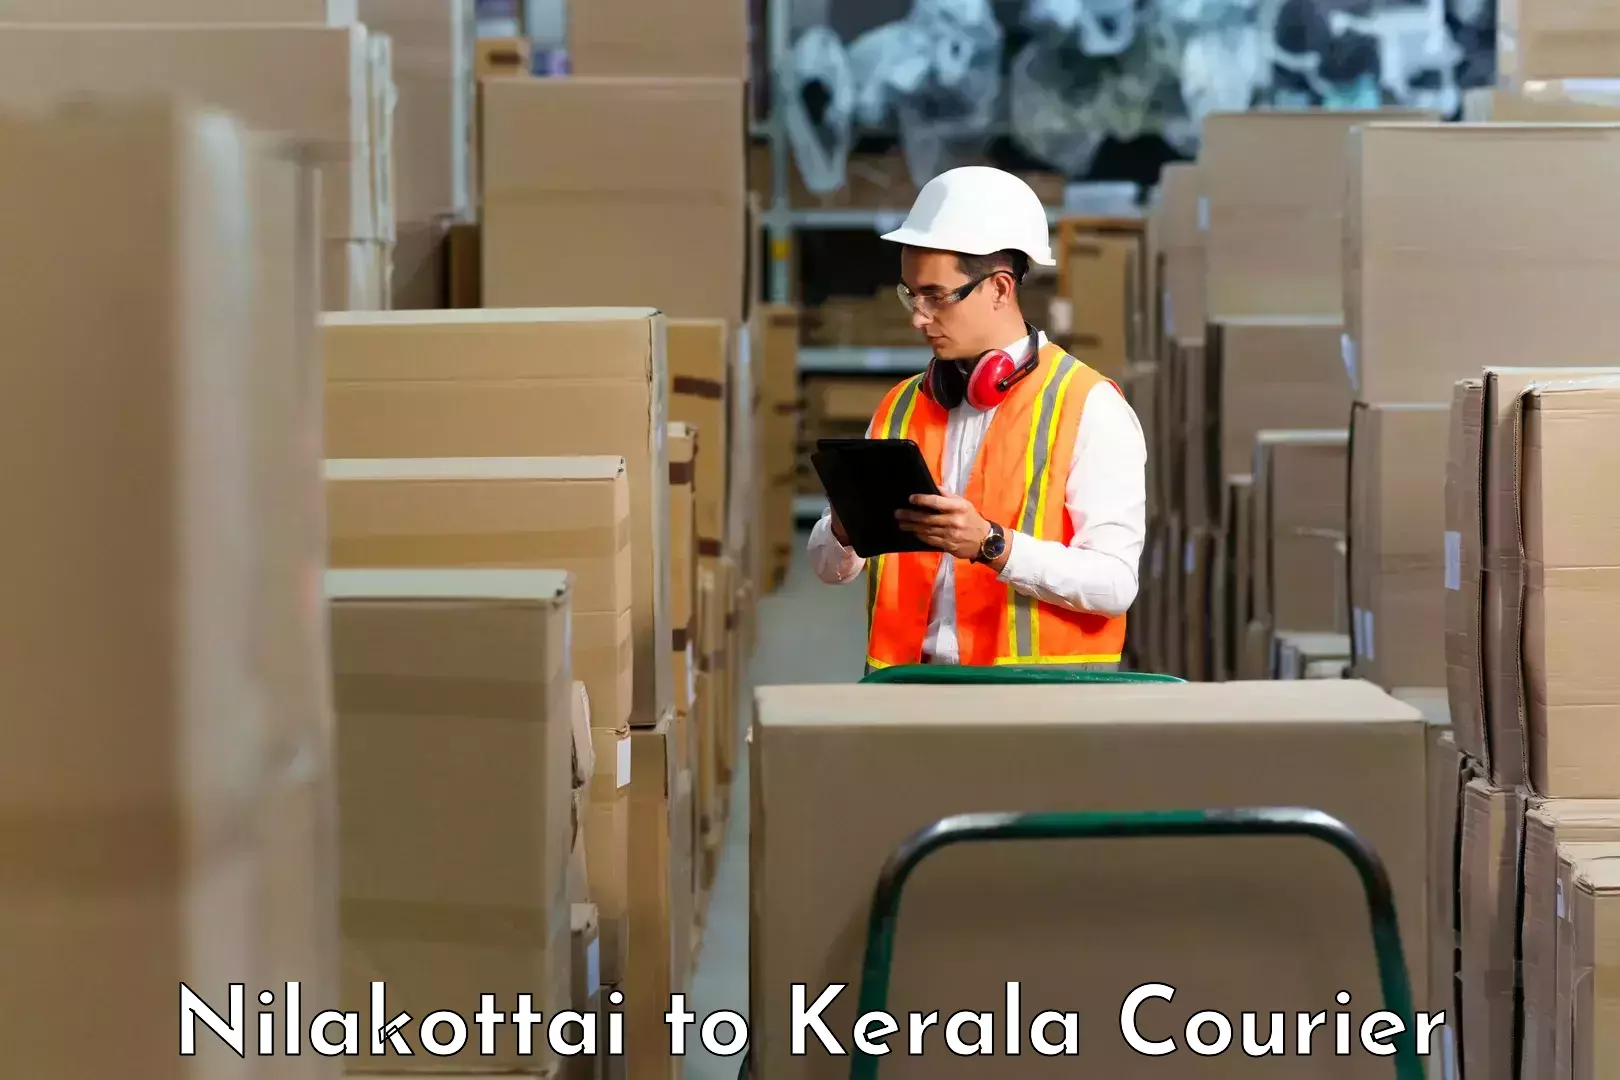 Reliable parcel services Nilakottai to Kottayam